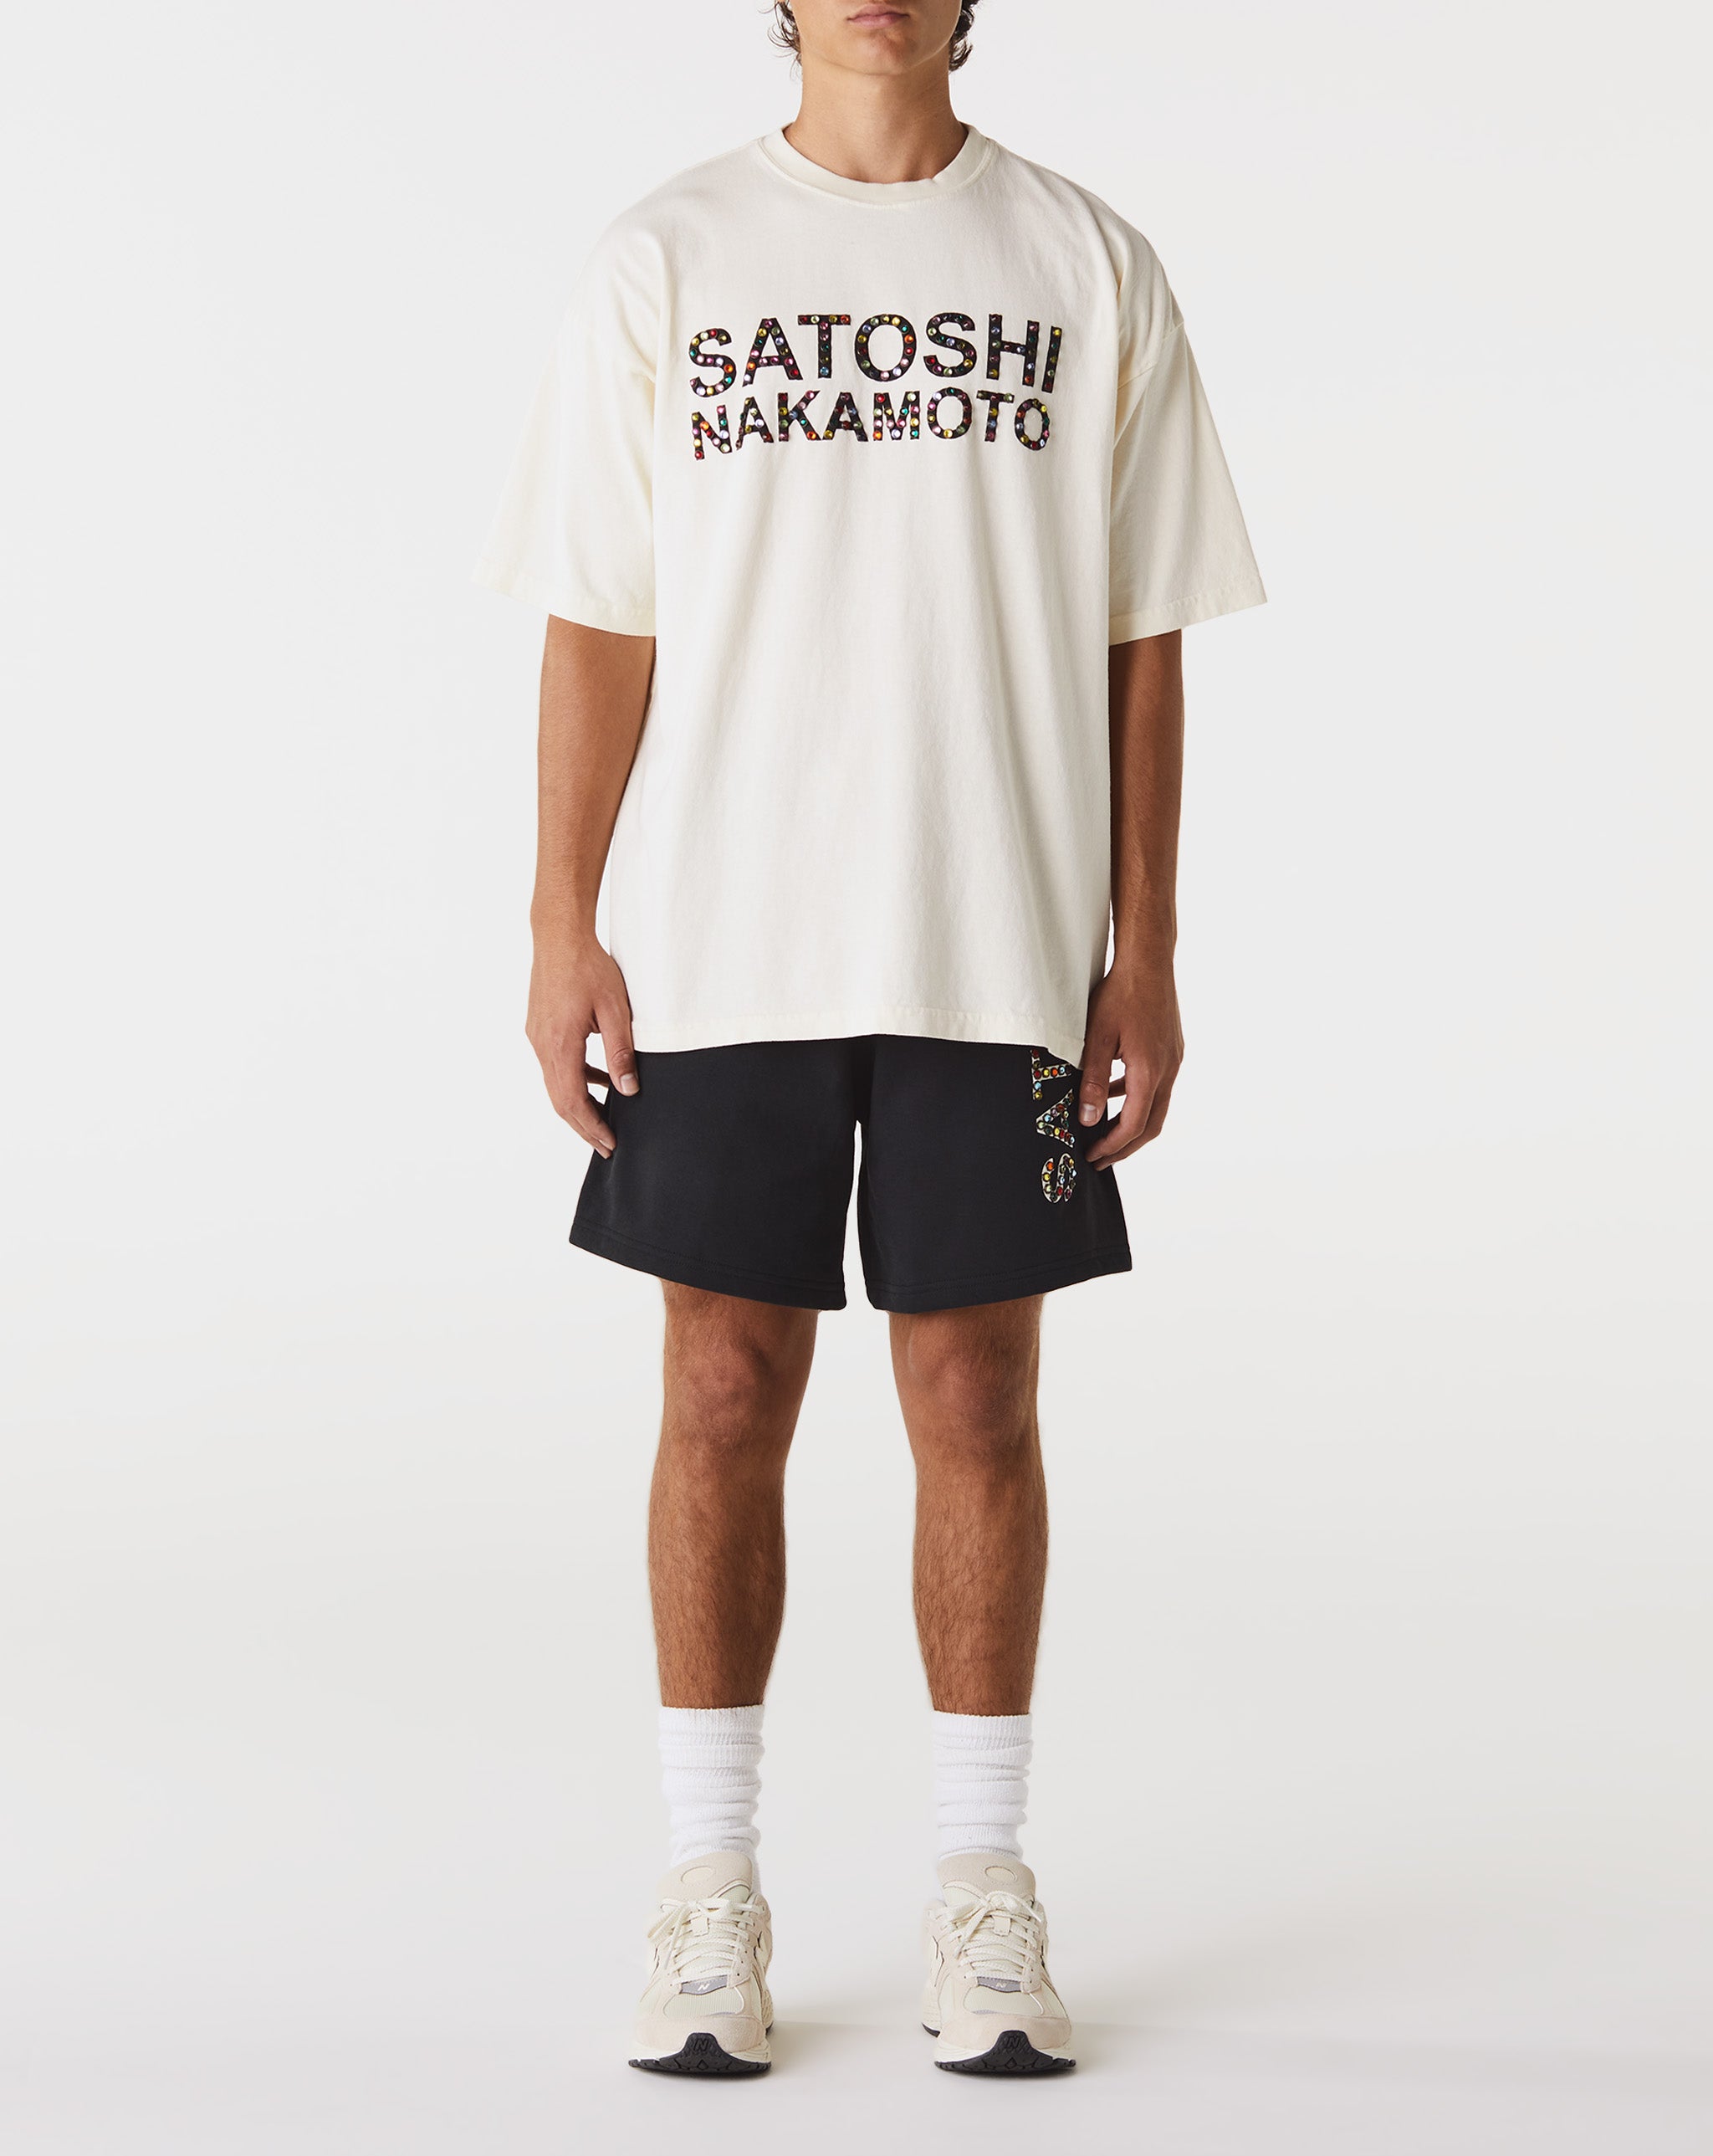 Satoshi Nakamoto Studded Logo T-Shirt  - XHIBITION